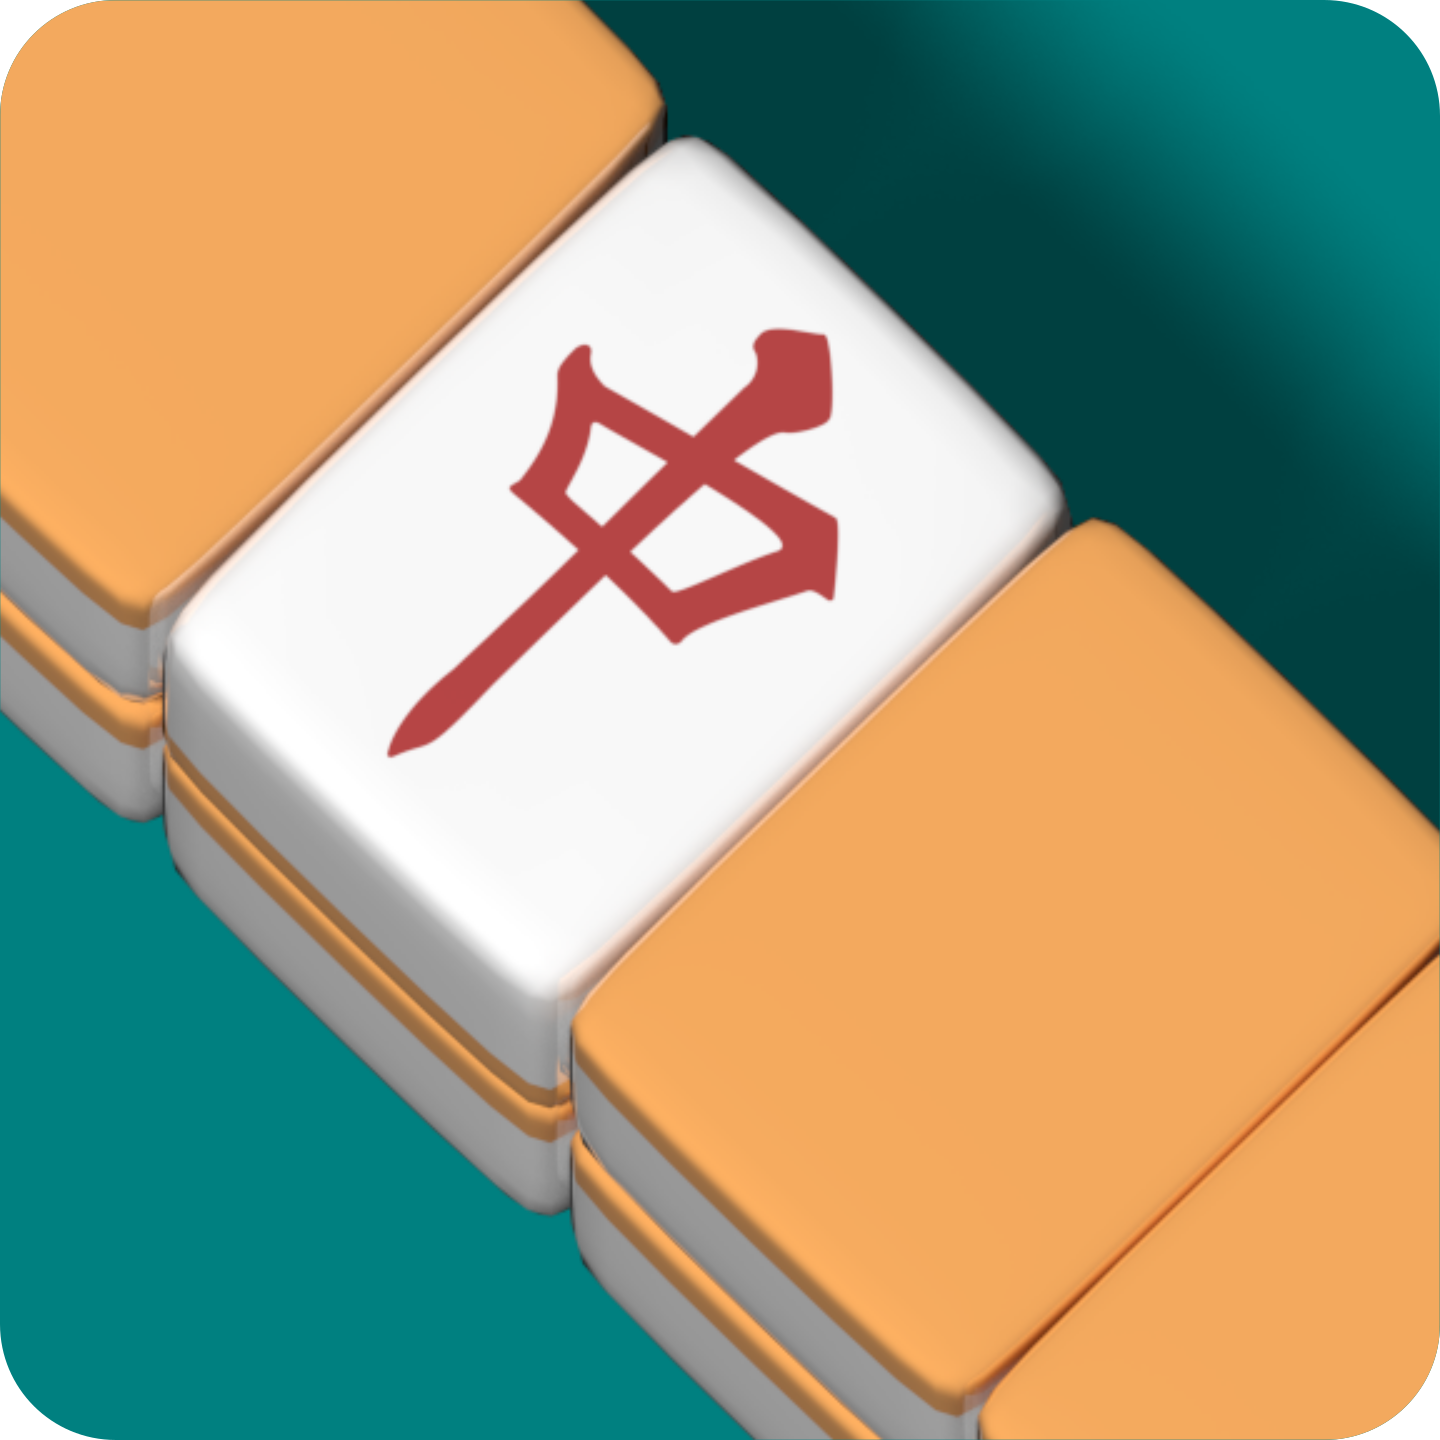 How to play Japanese mahjong. An article by Taiyaki_yaro, sharing